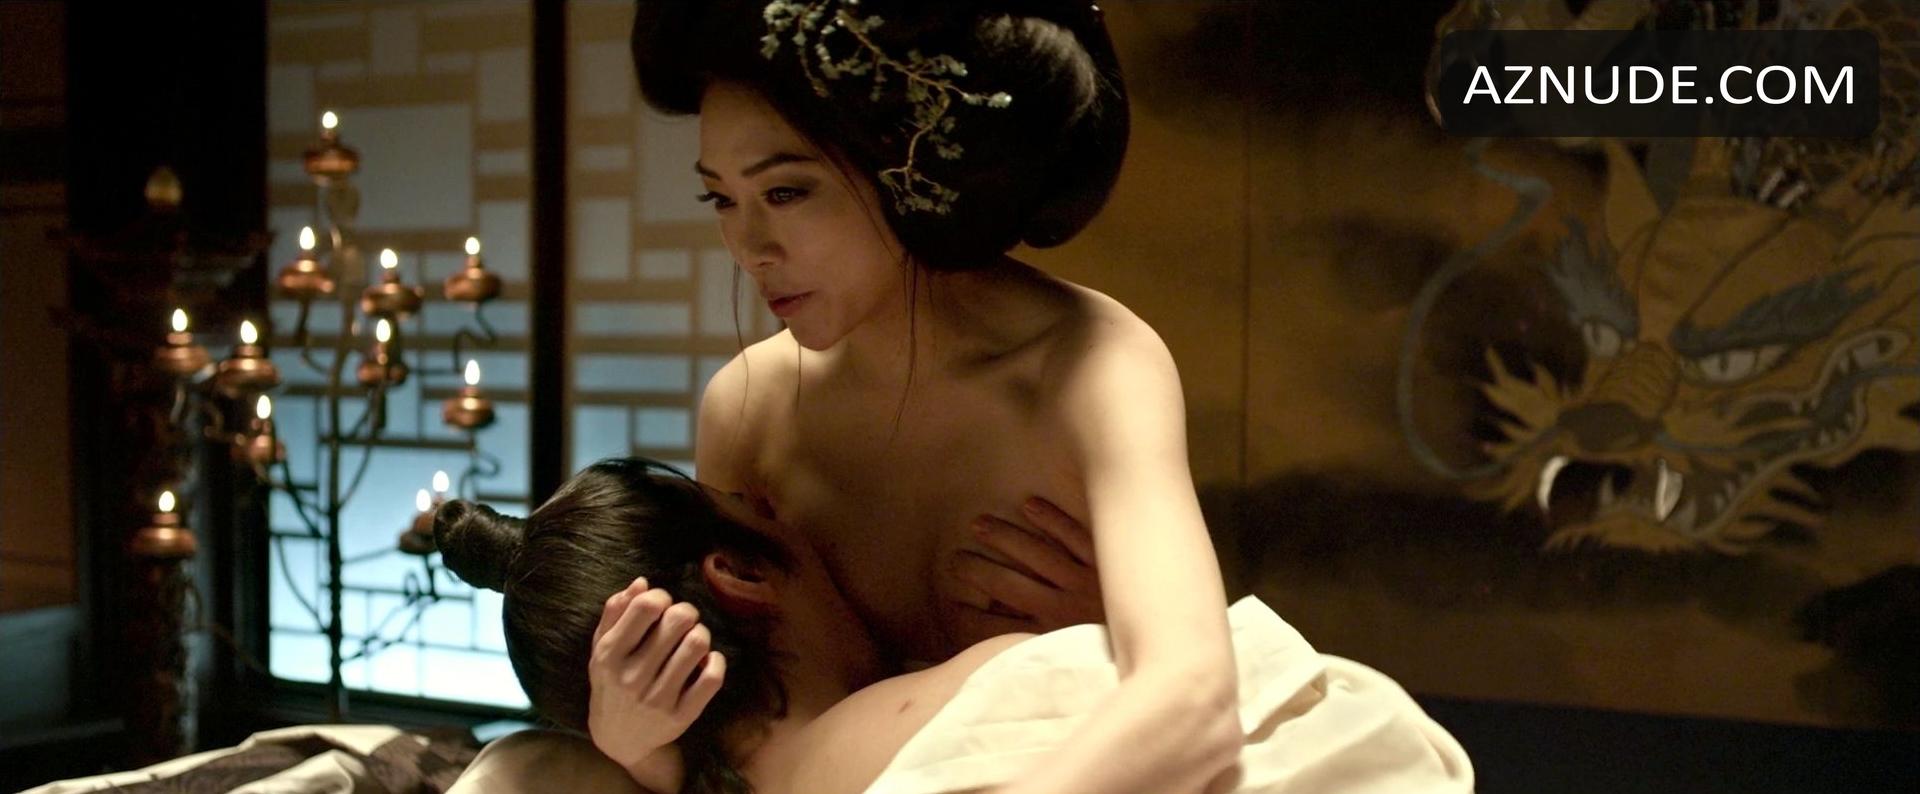 Cha ji yeon sex scene